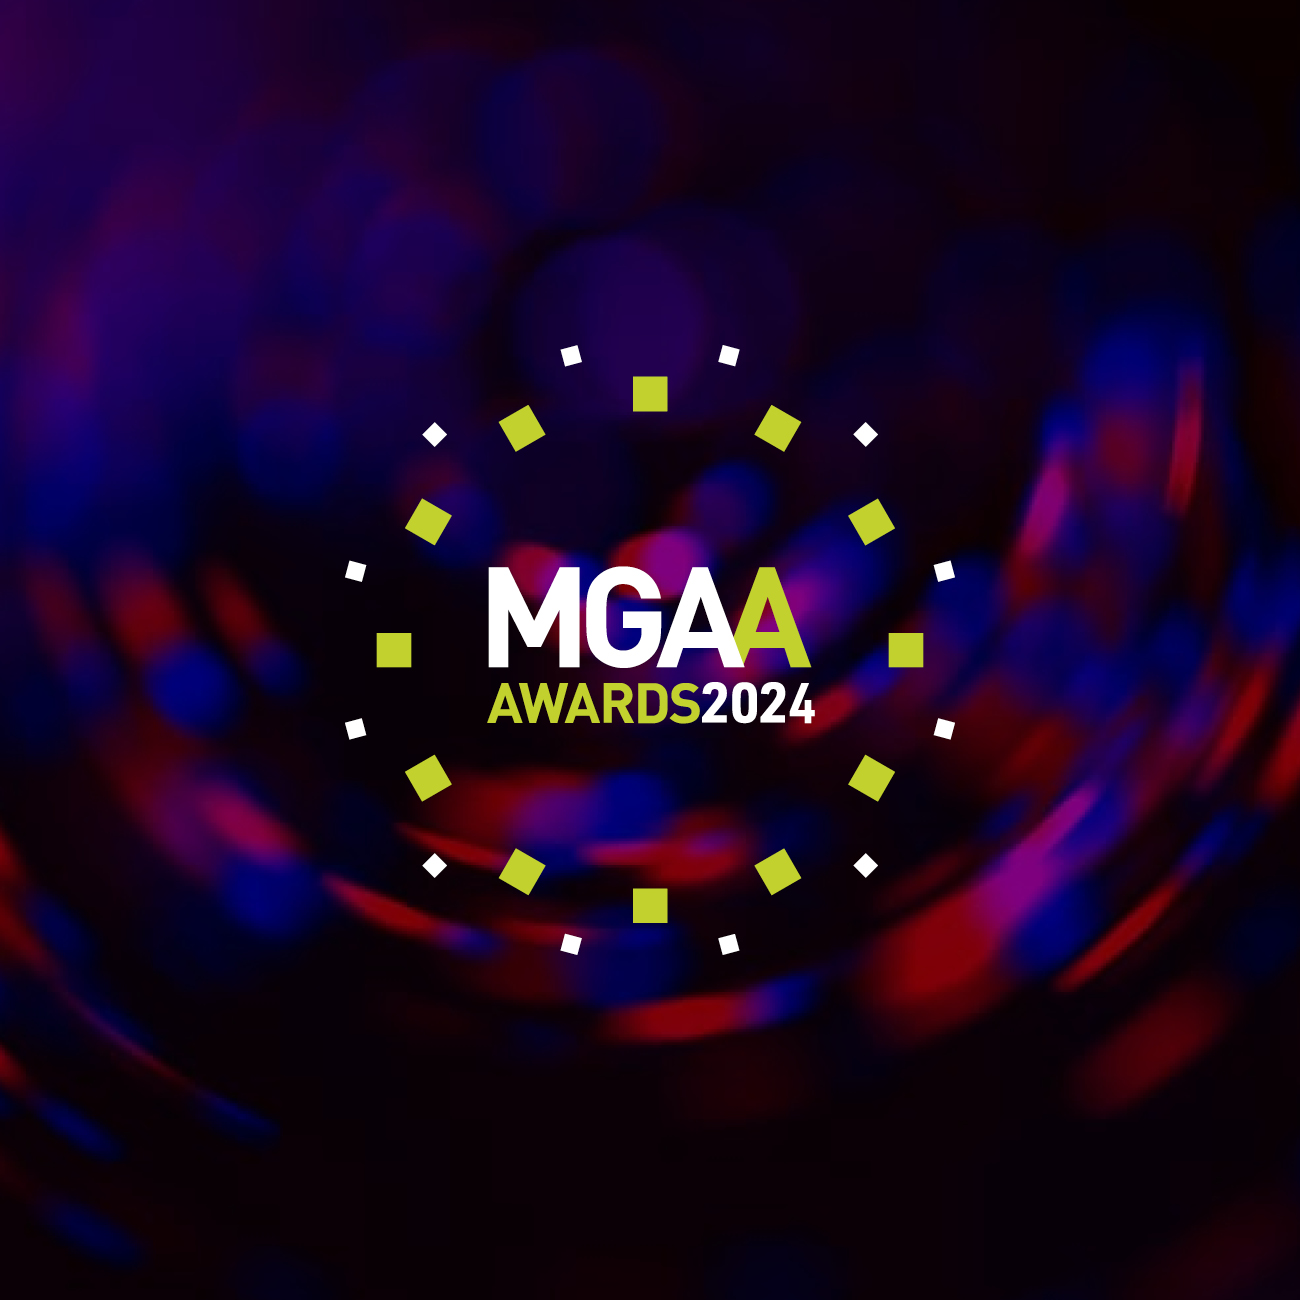 MGAA Awards 2024